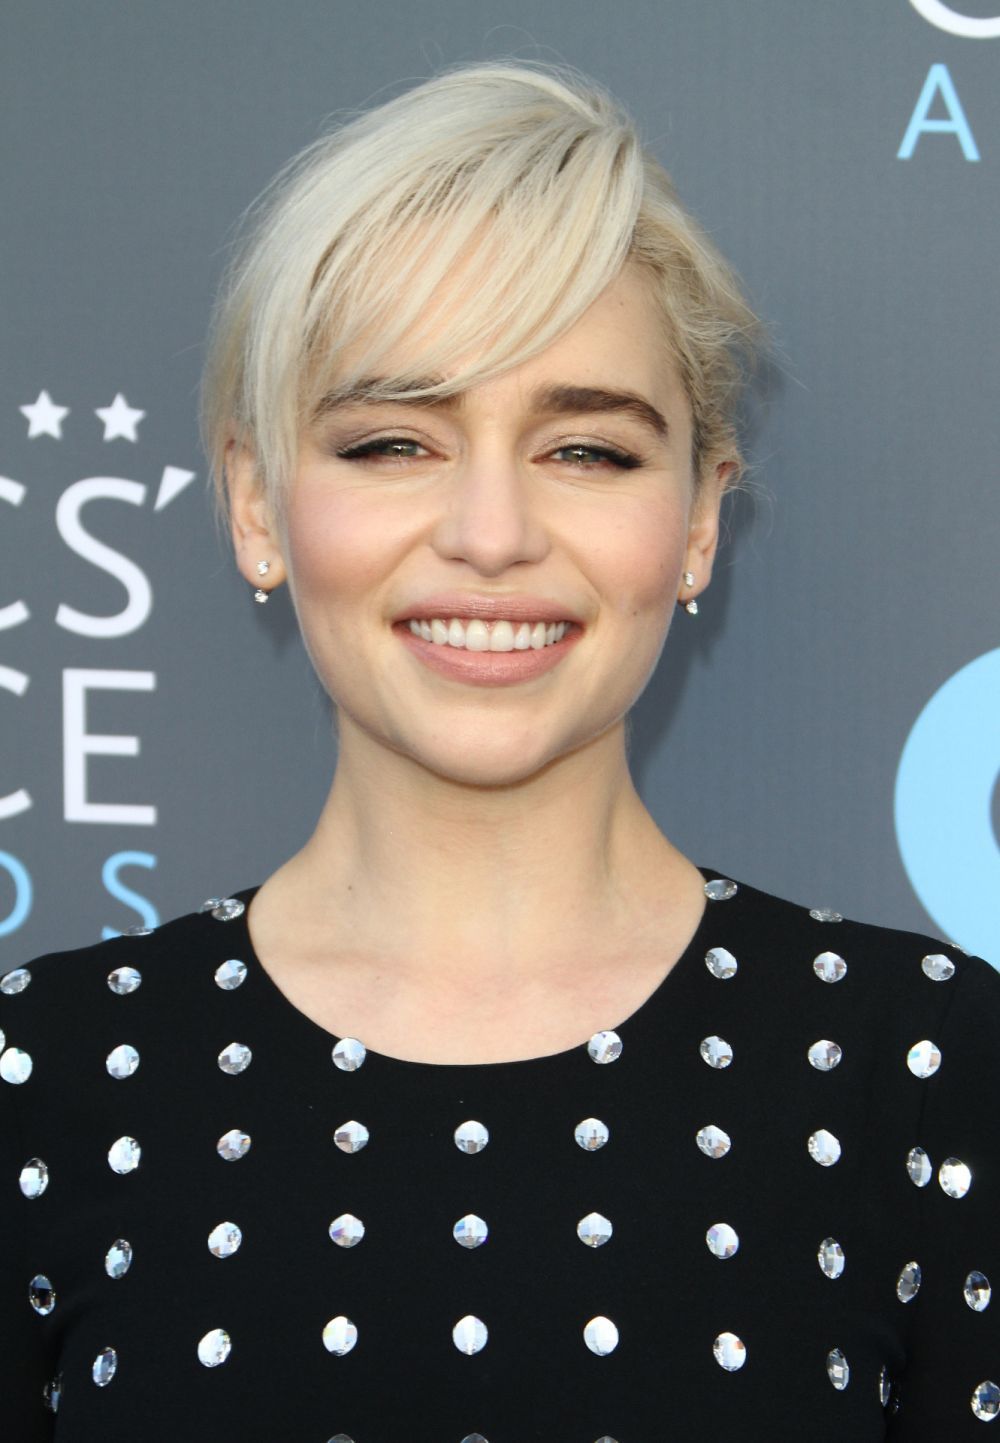 Emilia Clarke se ha decantado por un flequillo lateral para su corte de pelo pixie platino que funciona genial sobre su rostro redondo.